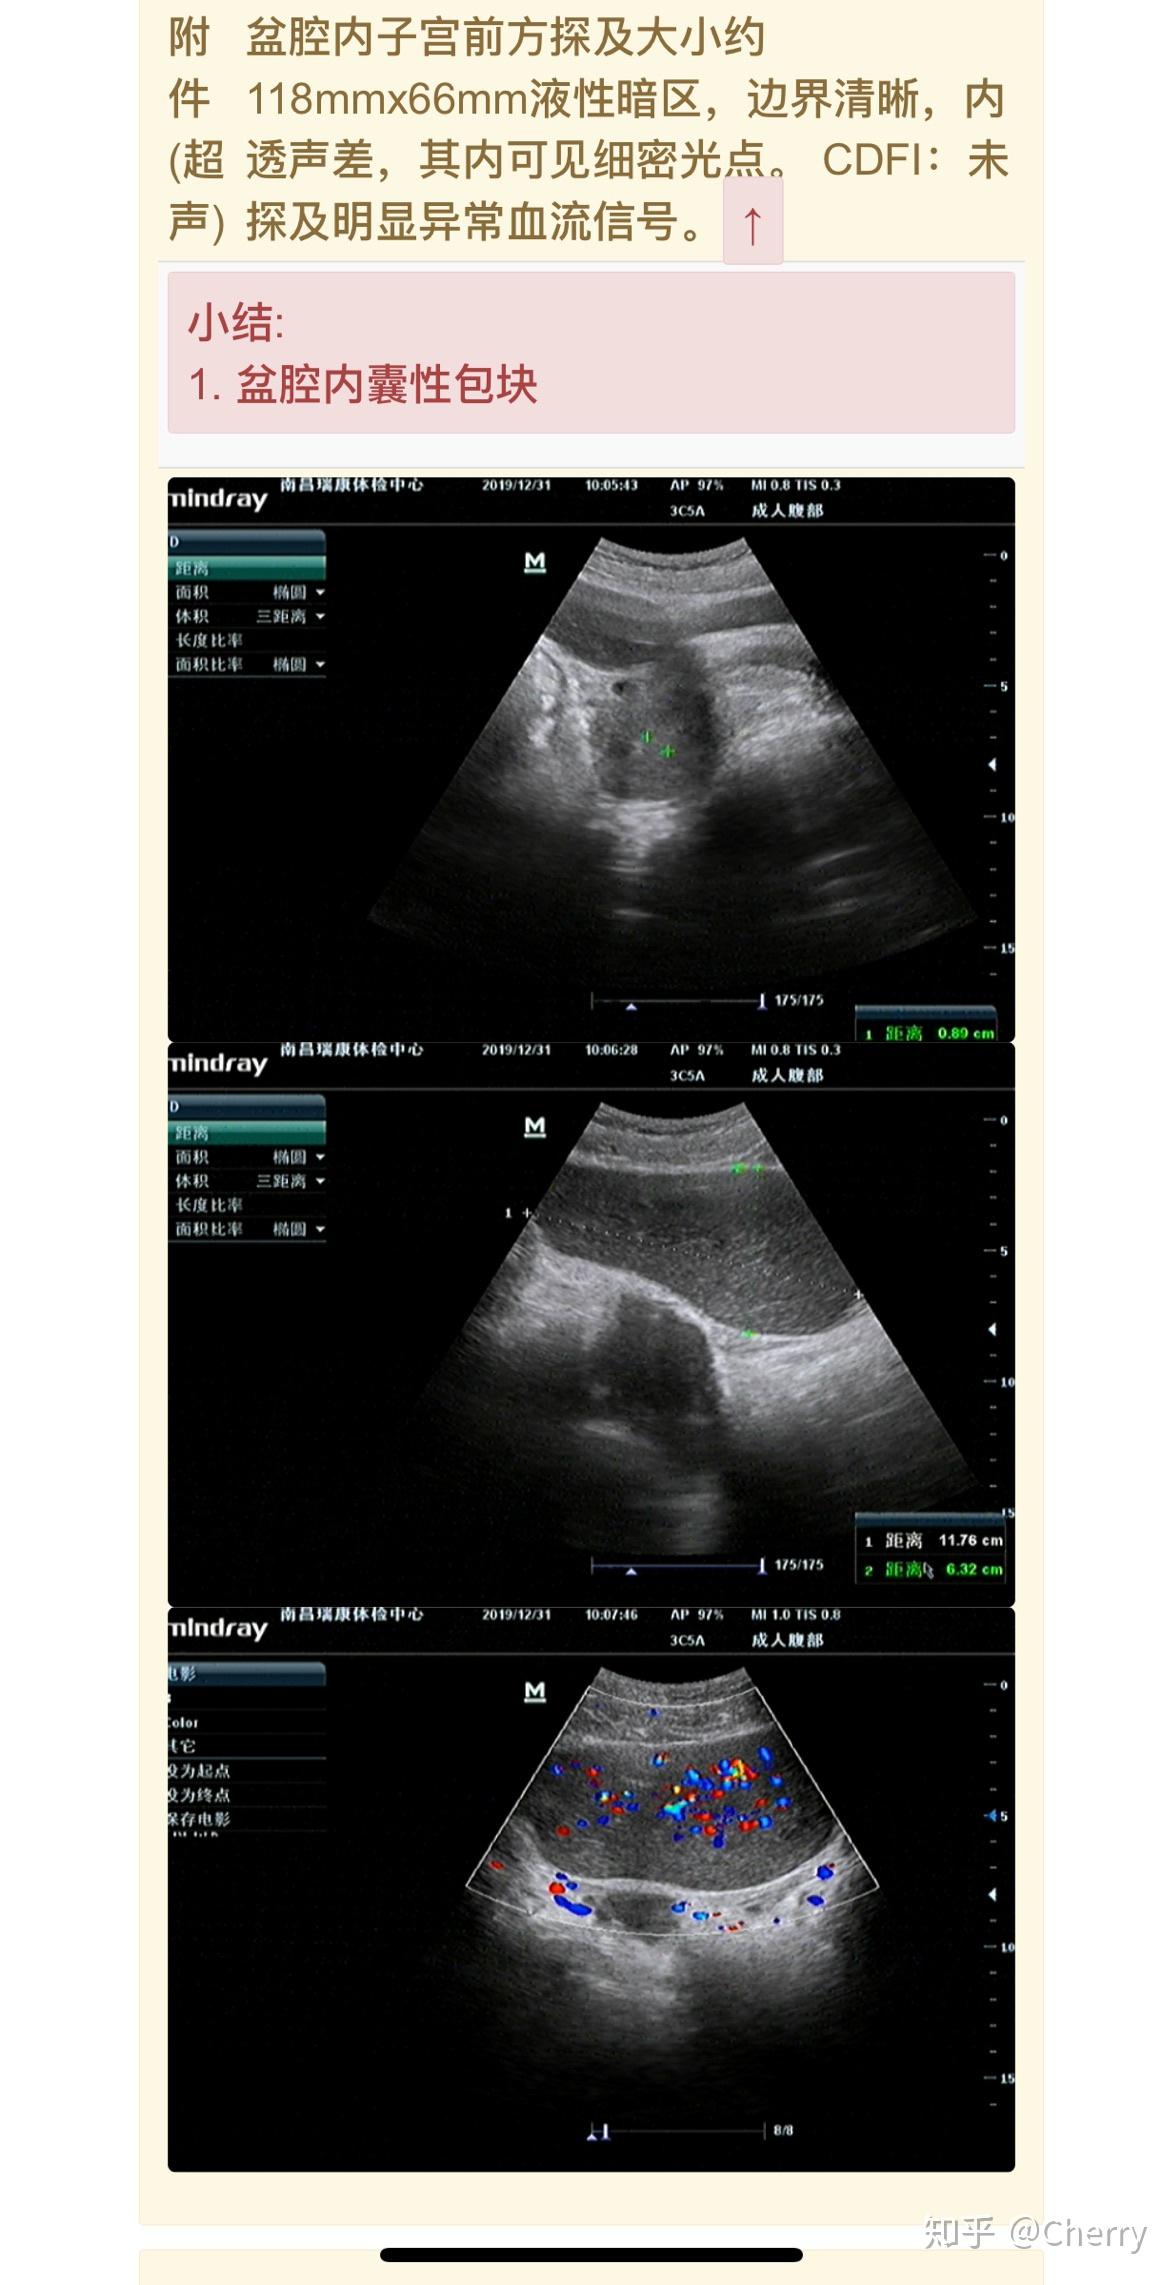 【腹腔镜篇】卵巢囊肿剥除术 - 内窥镜摄像系统 - 上海世音光电仪器有限公司